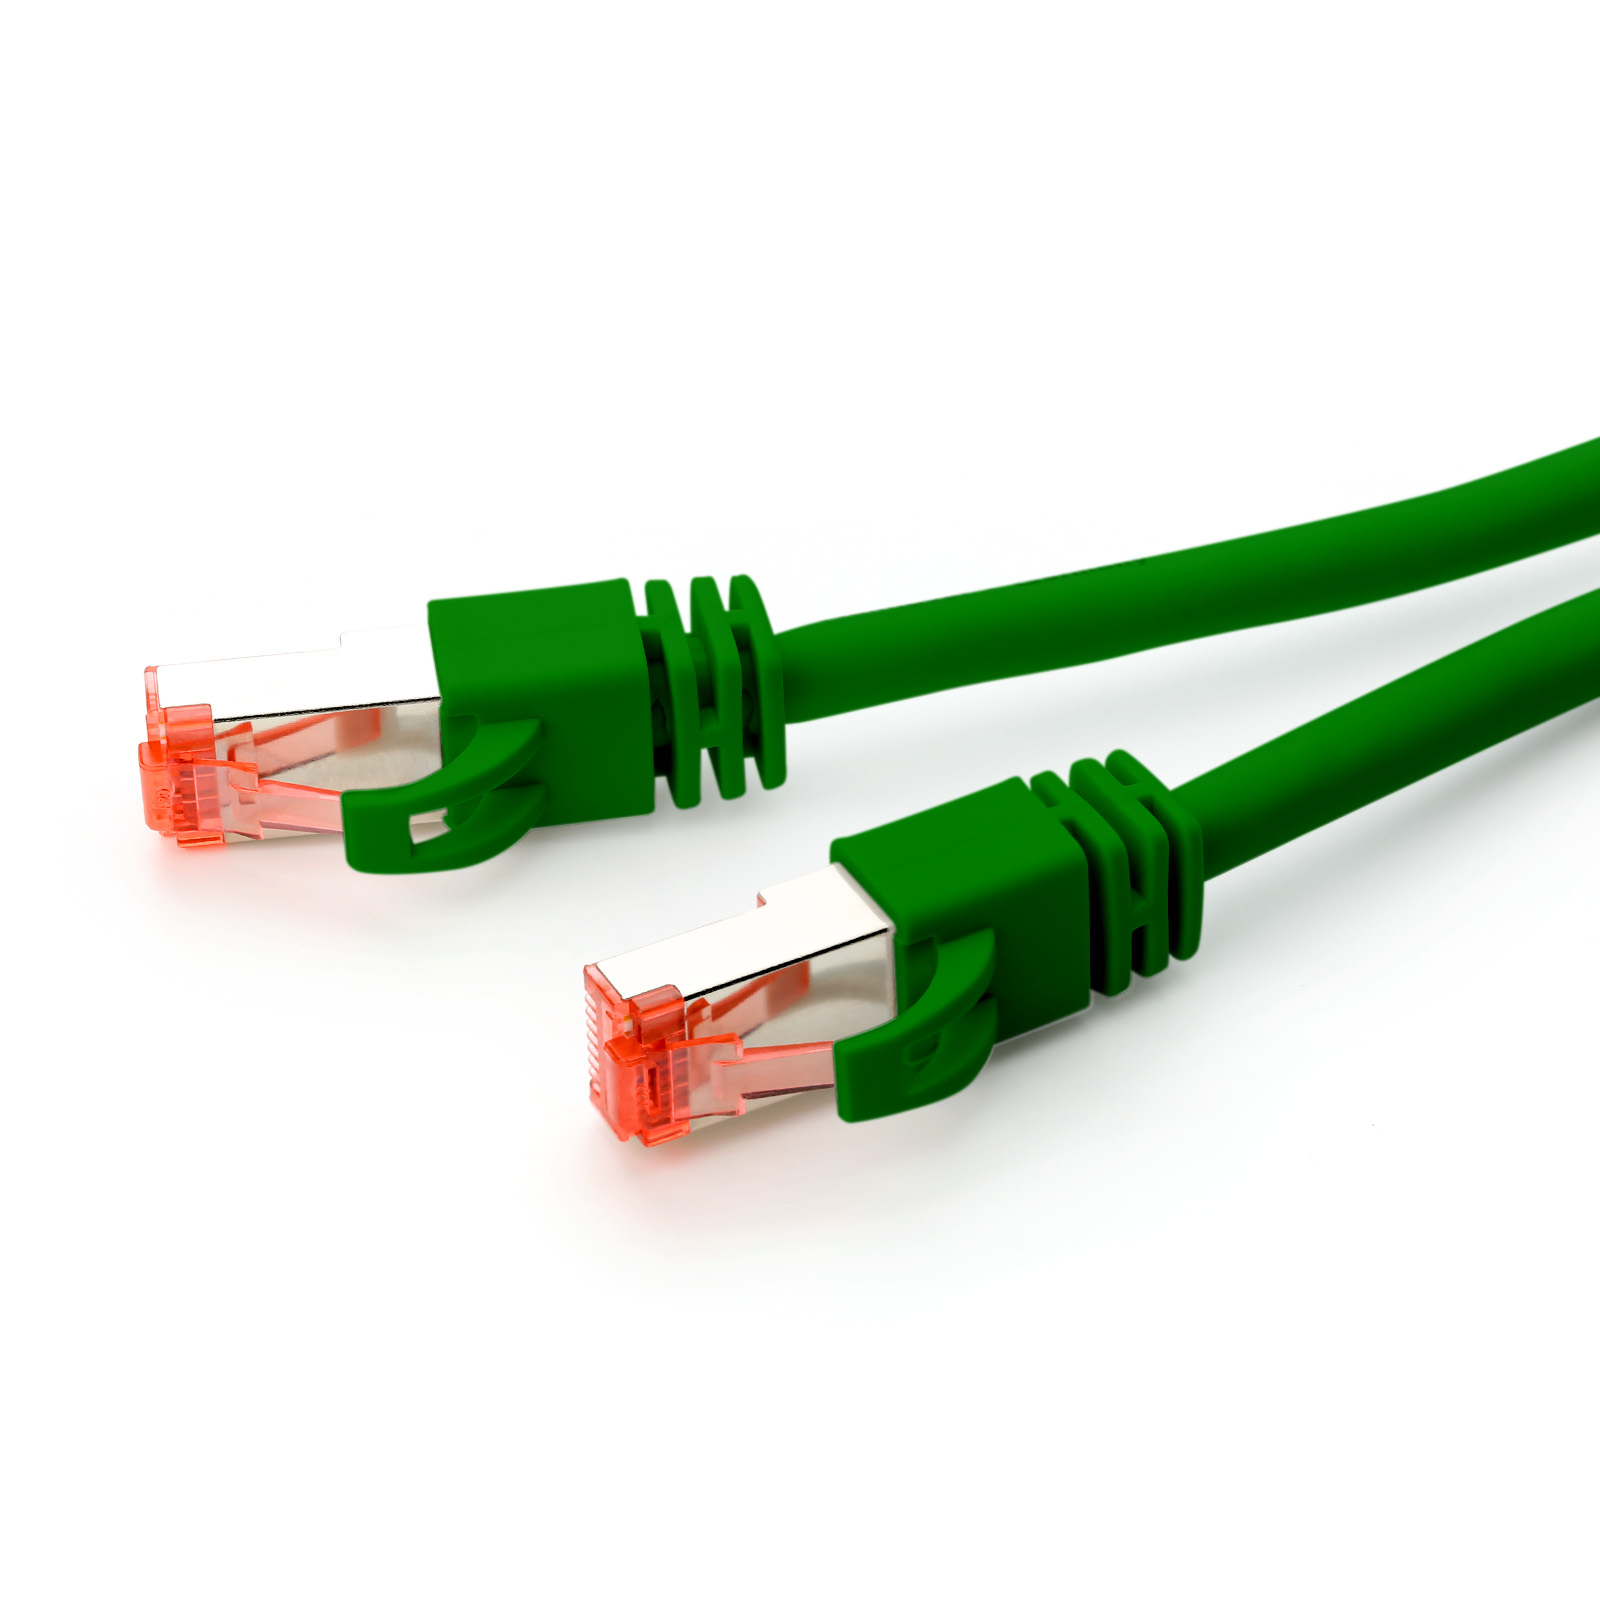 CSL Cat7 Netzwerkkabel, Patchkabel, 30m grün